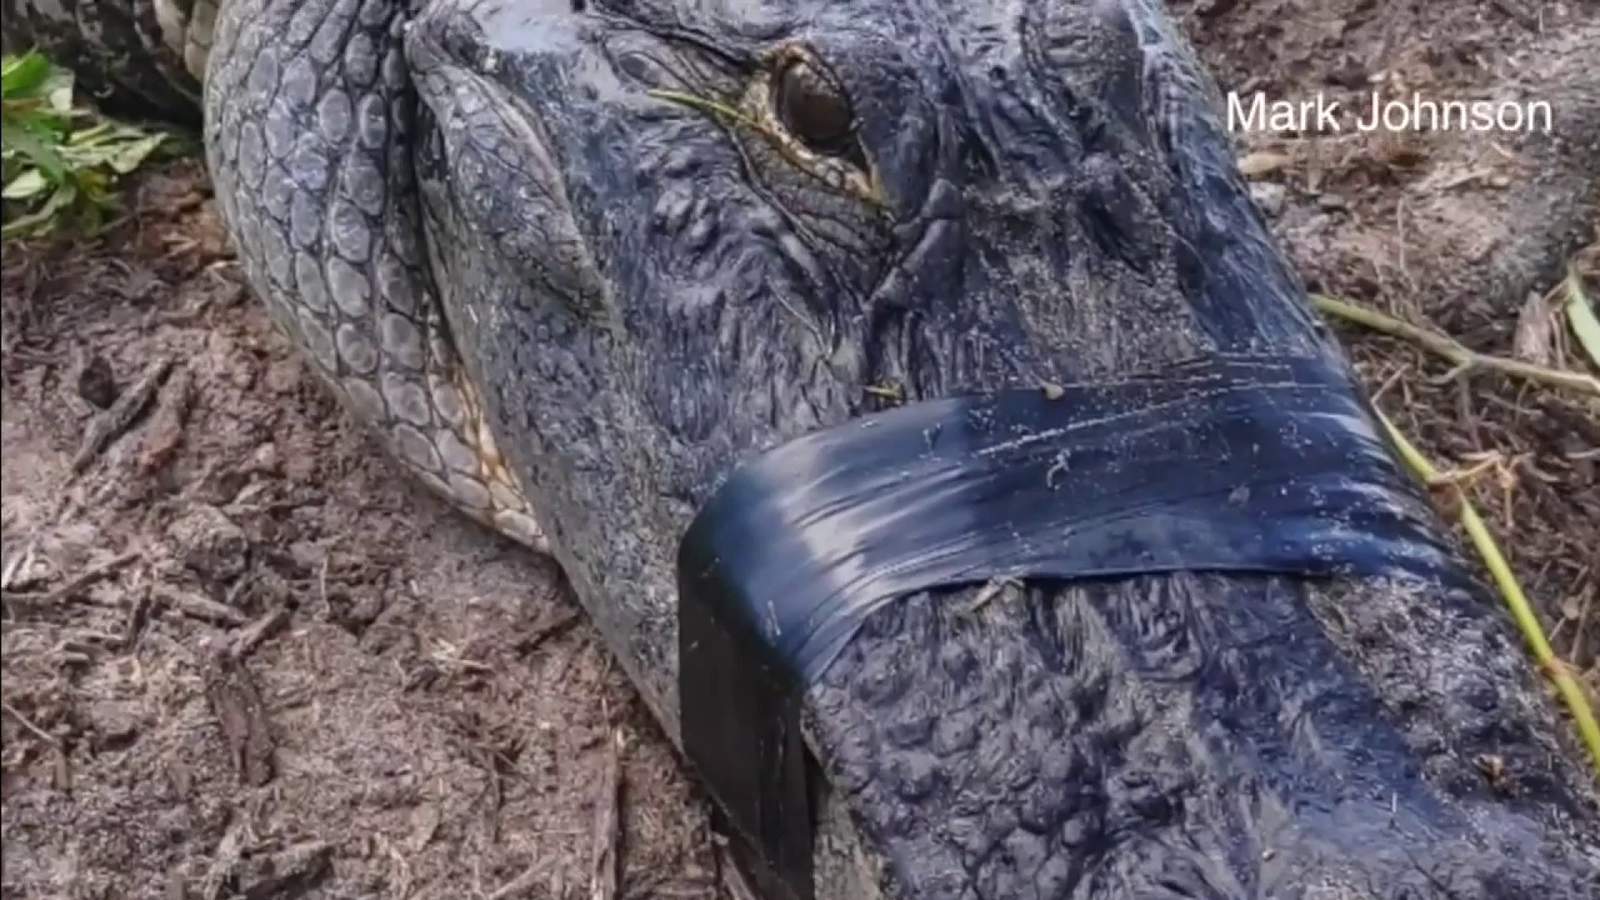 Florida man gets 62 stitches after 250-pound alligator attack